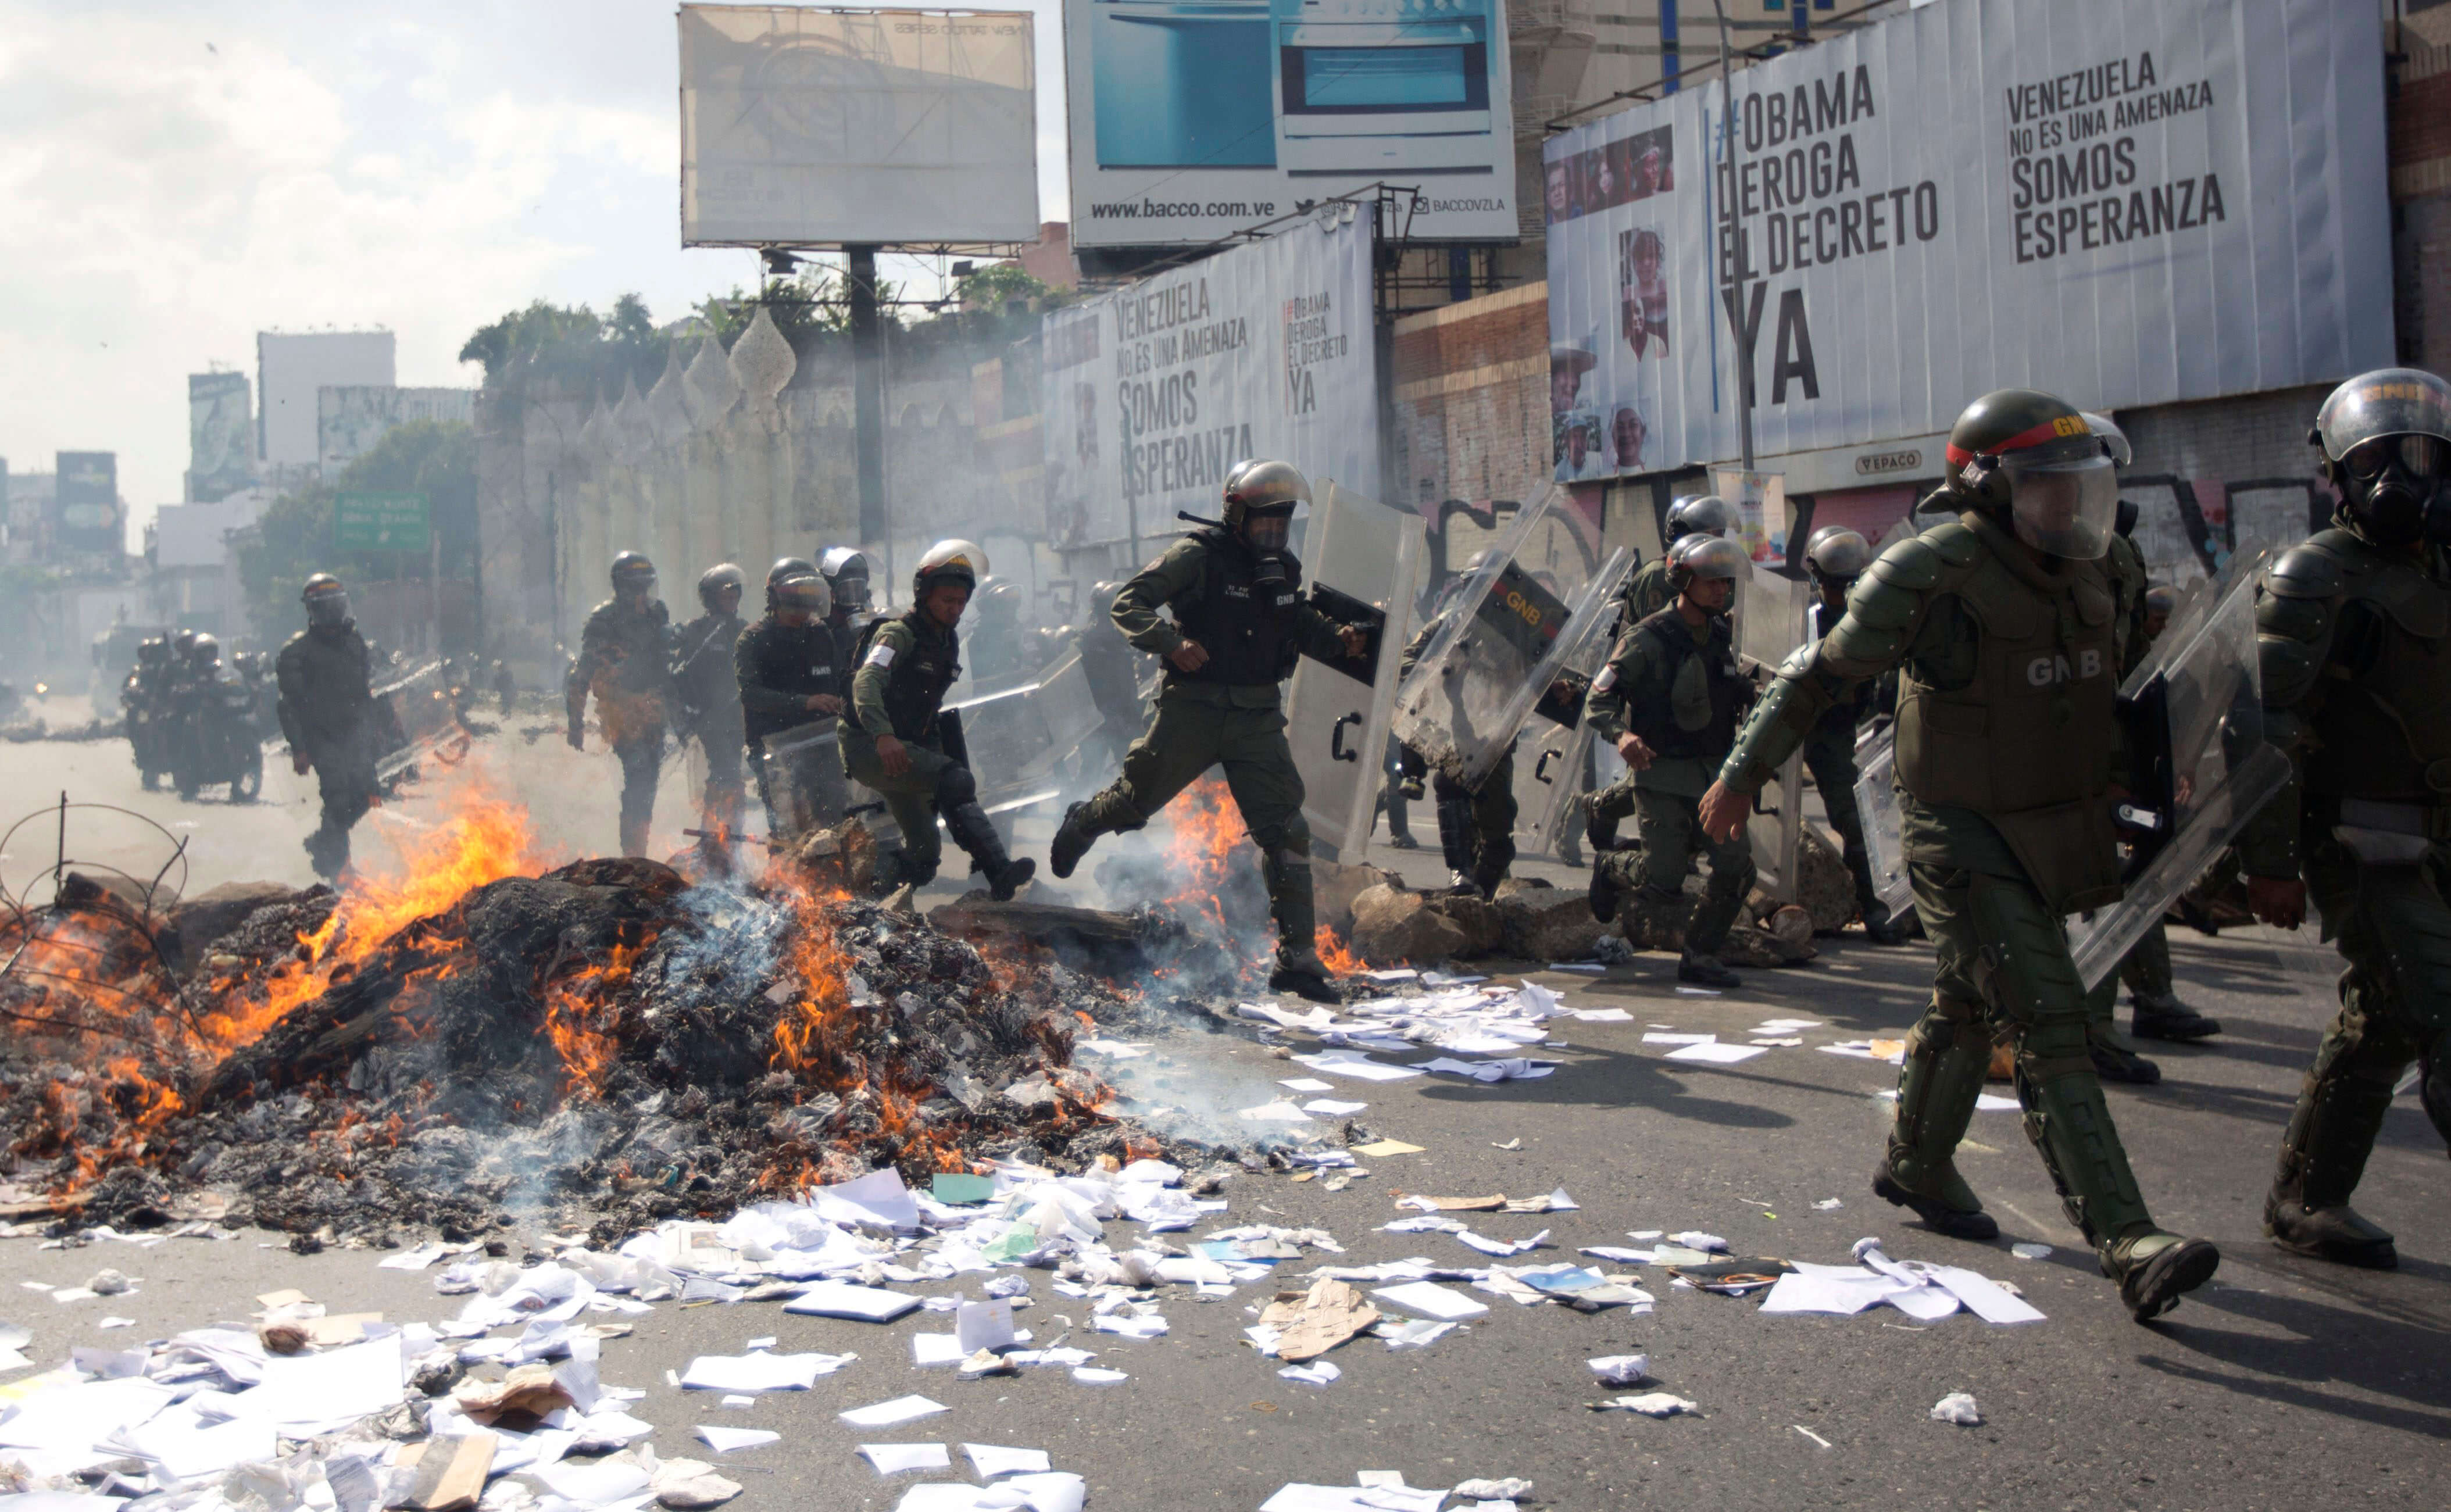 Los funcionarios de la Guardia Nacional Bolivariana se desplazan sobre una barricada en llamas durante una protesta en Caracas, Venezuela. (AP)